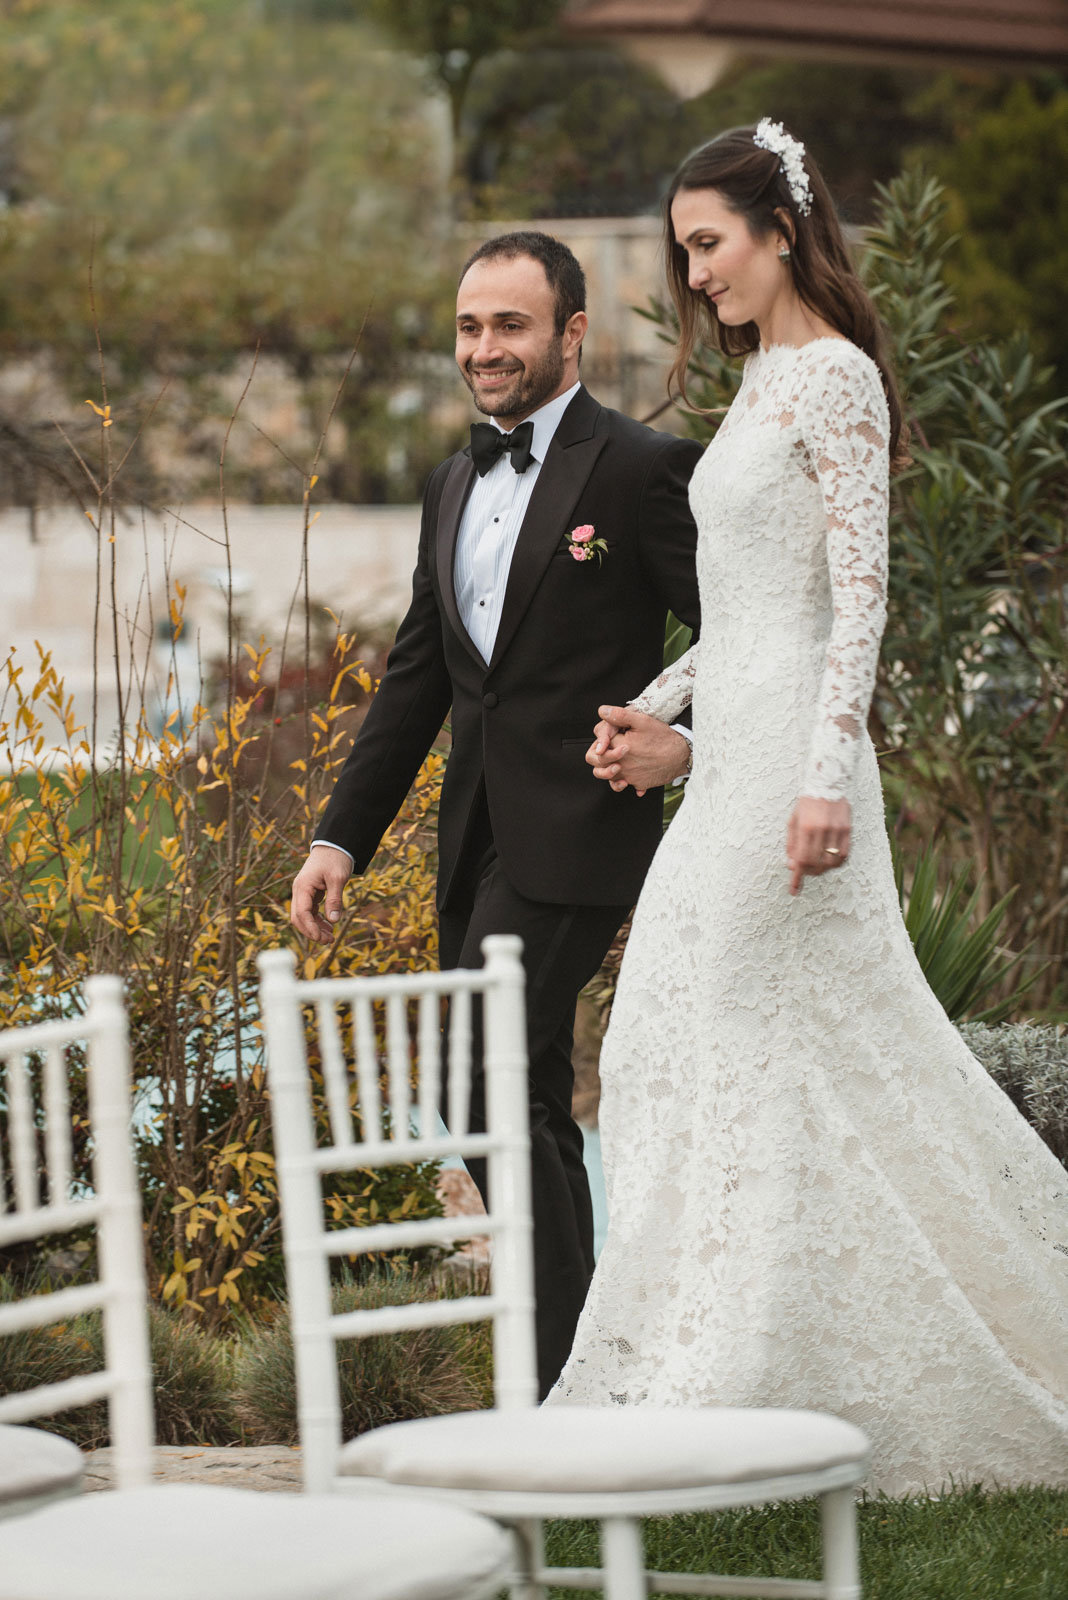 Işık & Ismail Wedding Photo Shoot. Umur Dilek Photography. Düğün fotoğraf çekimi